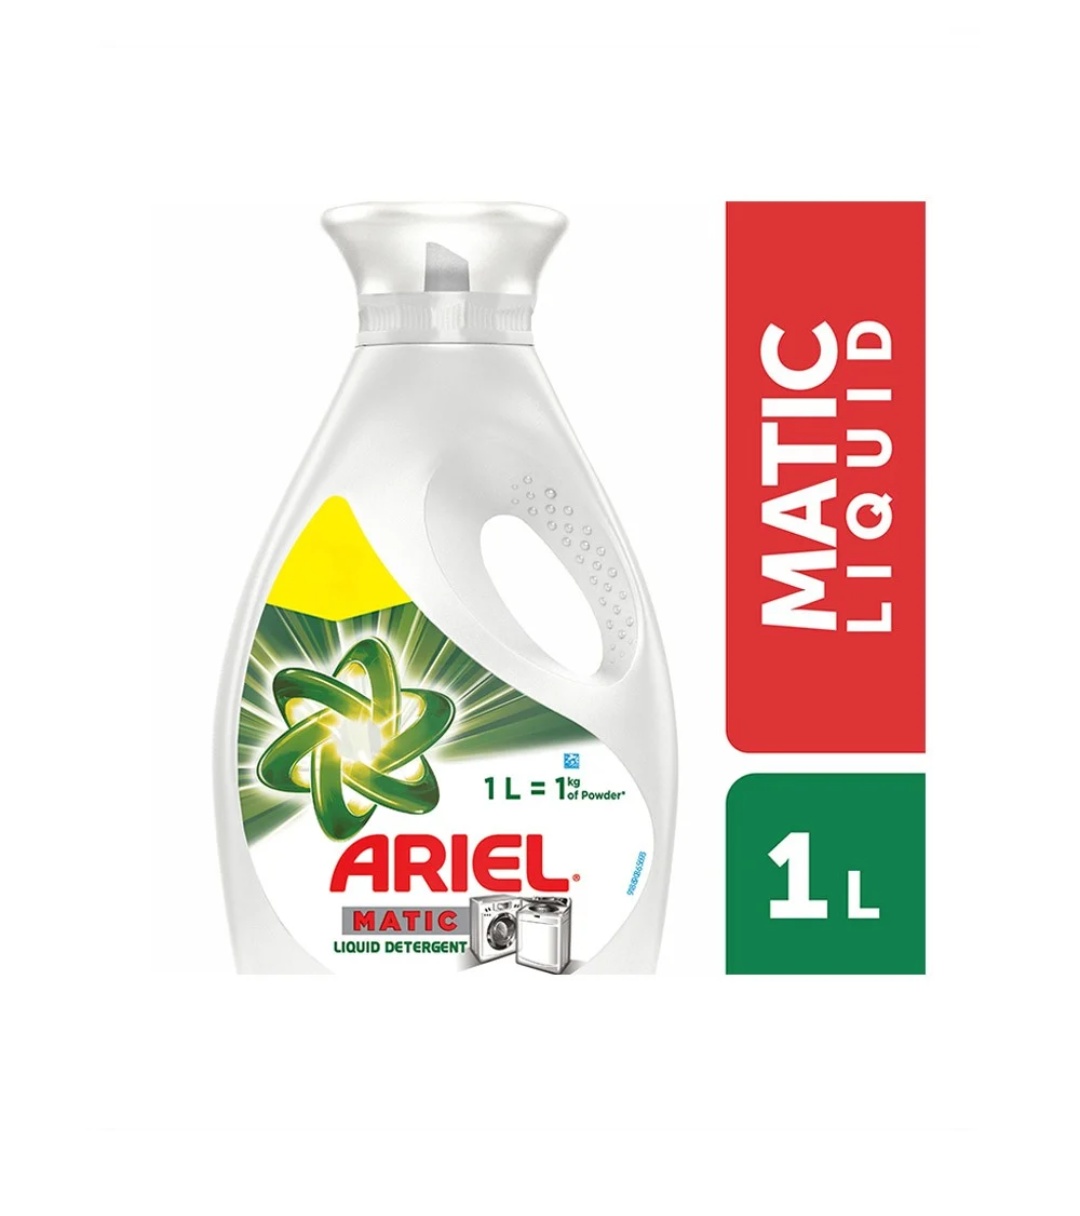 Ariel Matic Liquid Detergent, 1 lit